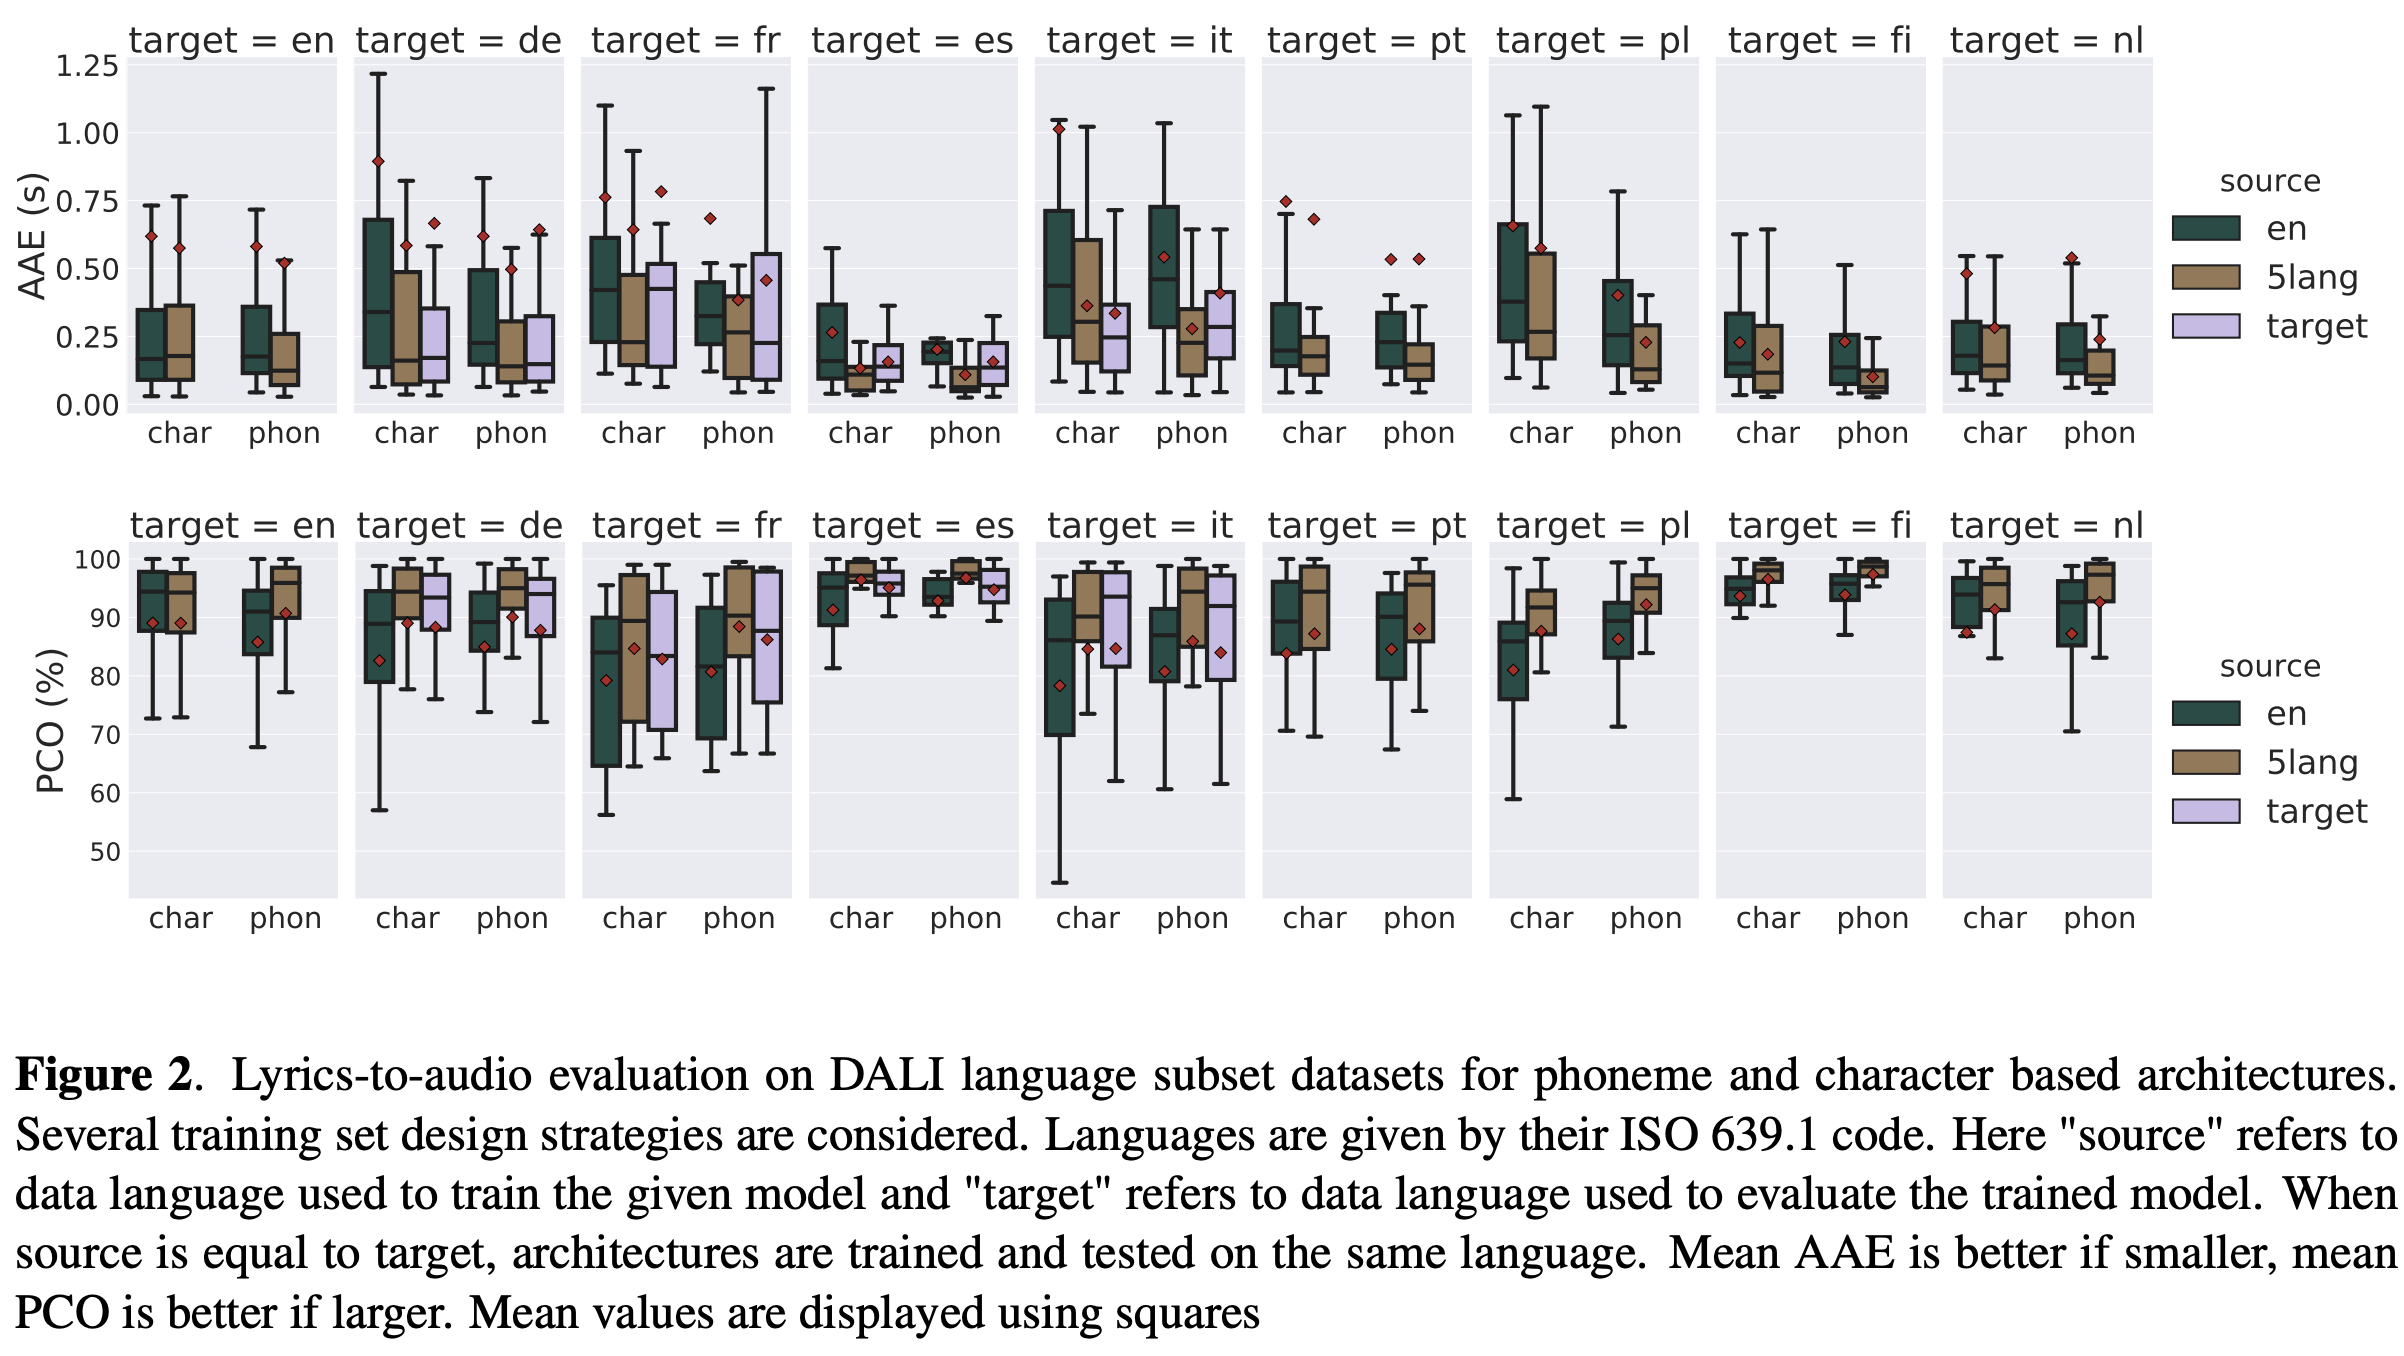 Lyrics-to-audio evaluation on DALI language subset datasets for phoneme and character based architectures